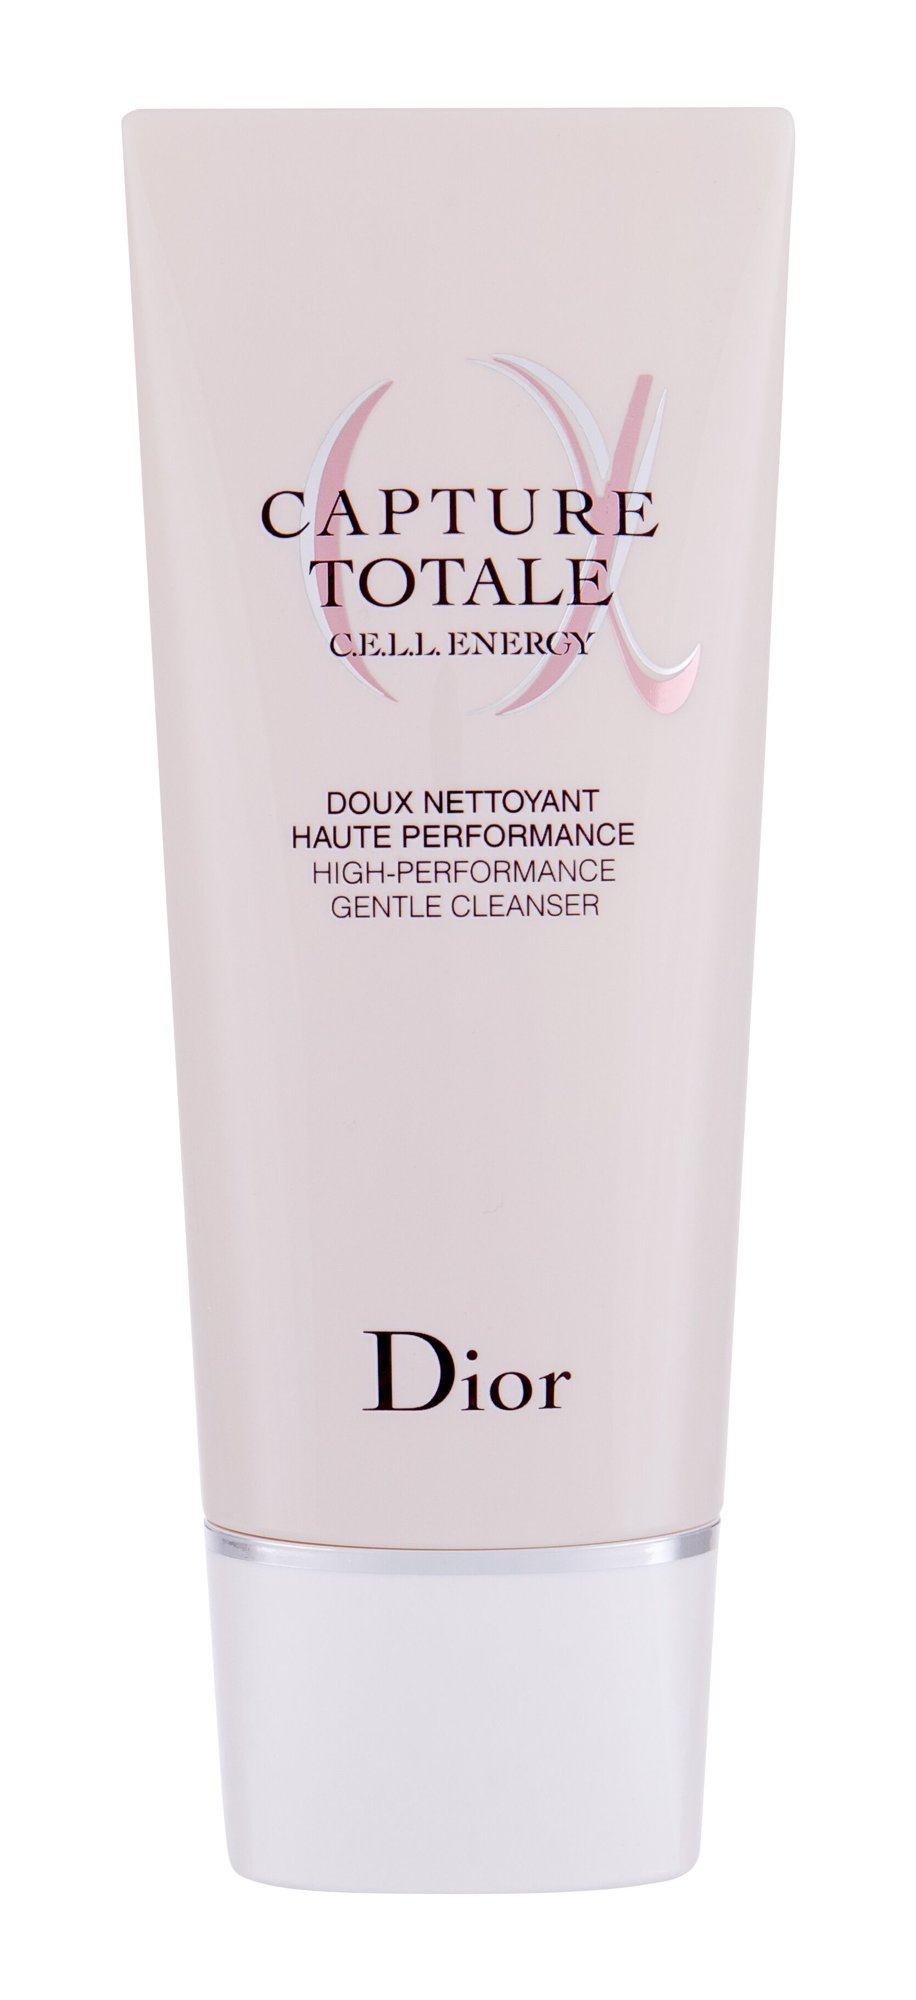 Christian Dior Capture Totale C.E.L.L. Energy Gentle Cleanser veido gelis